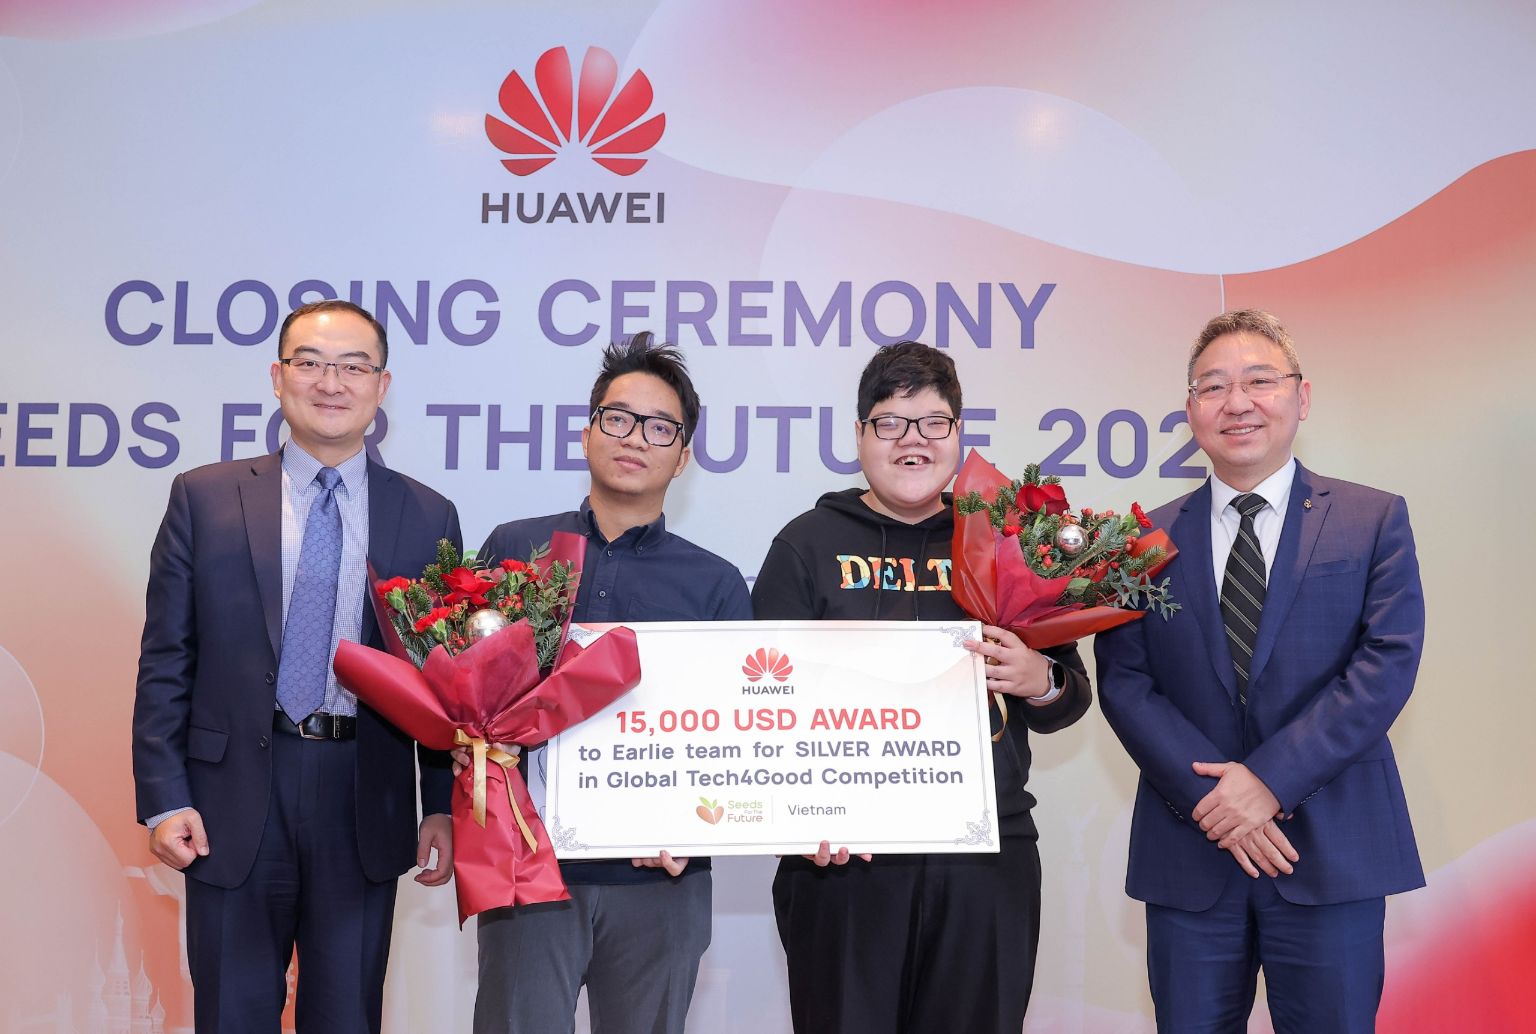 Sinh viên tài năng đạt Giải Nhì tại cuộc thi Tech4Good 2021  Huawei Việt Nam nhận bằng khen từ Hội Truyền thông số cho nỗ lực đào tạo nhân tài ngành ICT 